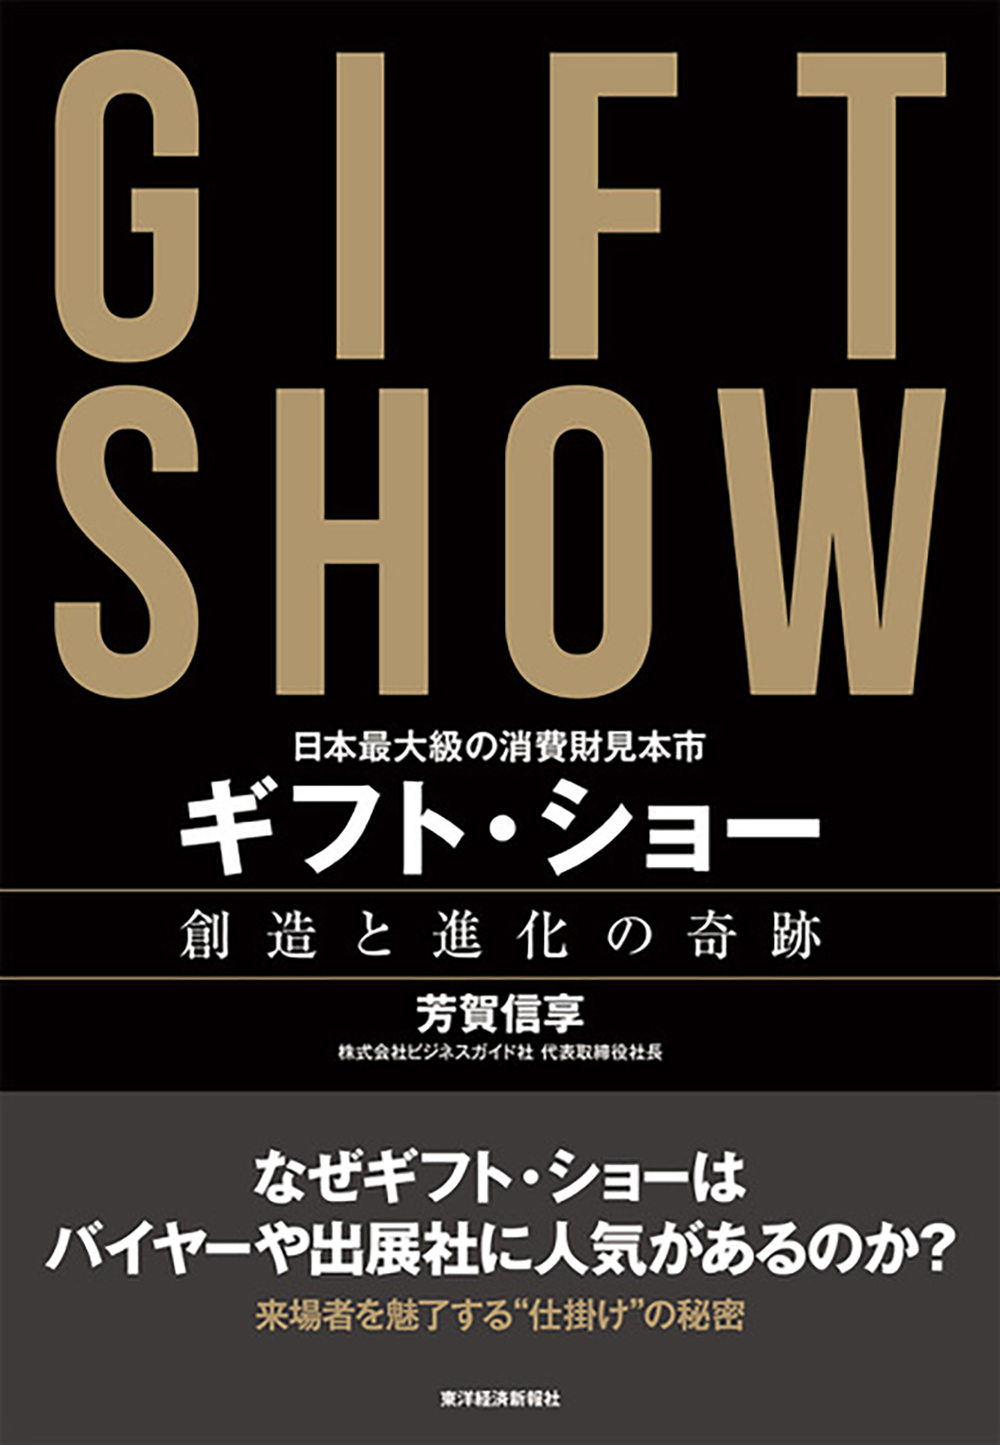 日本最大級の消費財見本市 ギフト・ショー 創造と進化の奇跡